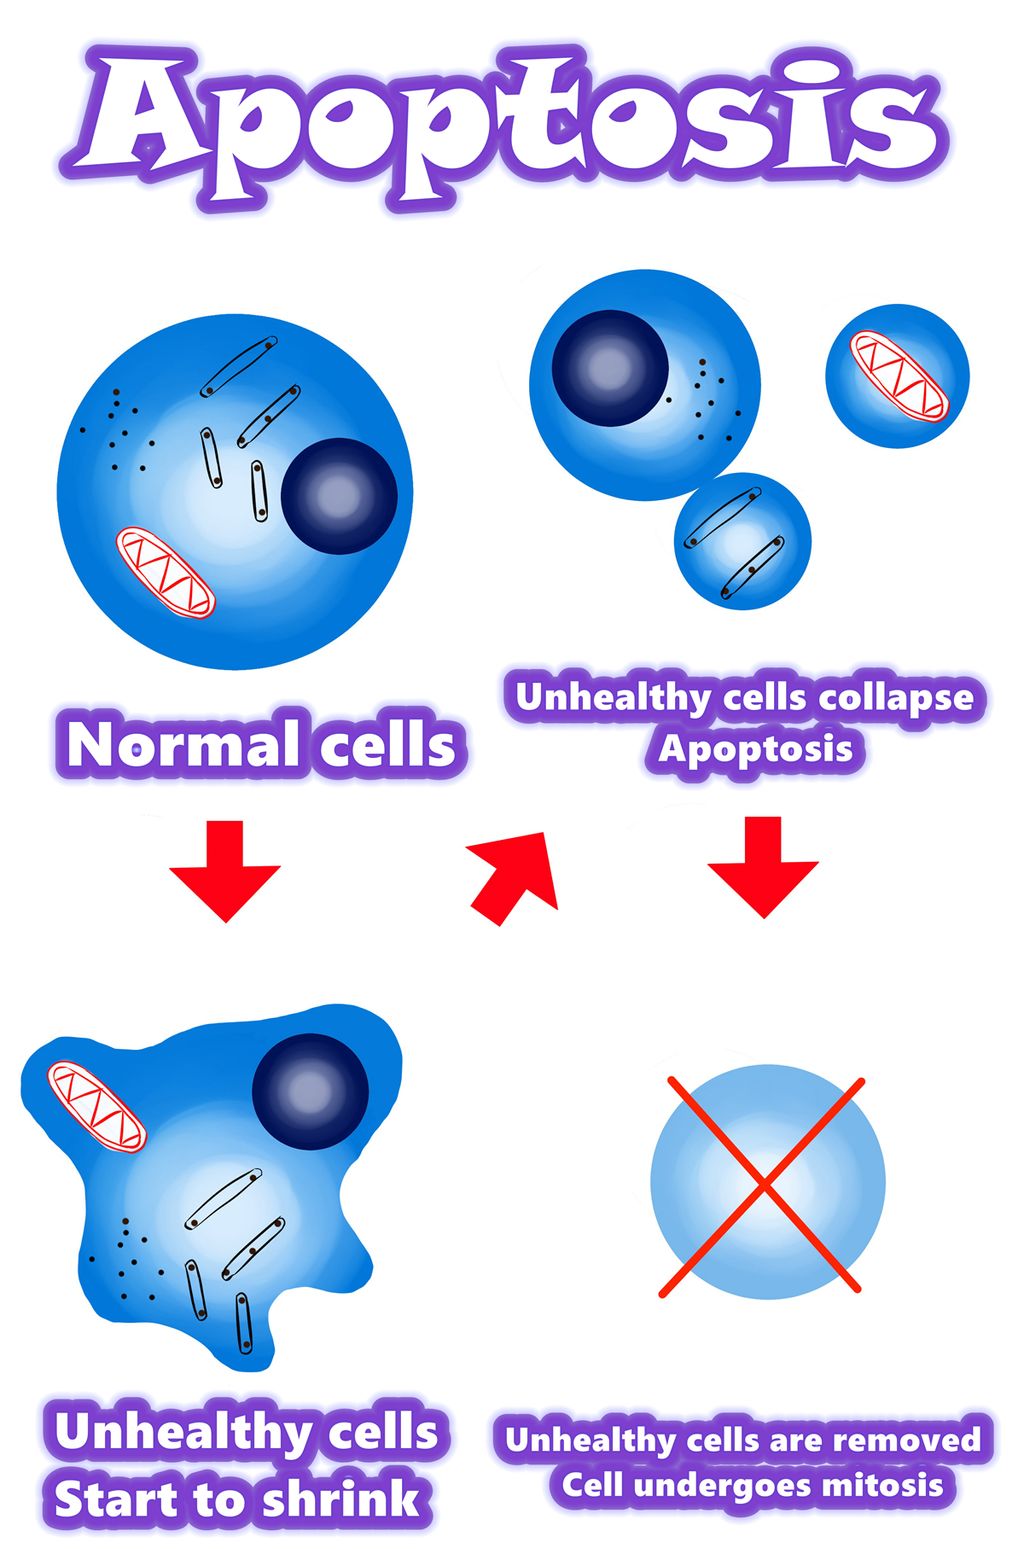 Solamargine | Den bästa lösningen för cancerceller 2021 | Apoptos mot cancerceller | Apoptos mot onormala celler | Apoptos mot mutanta celler | Översikt / Sammanfattning / Mekanism för apoptos